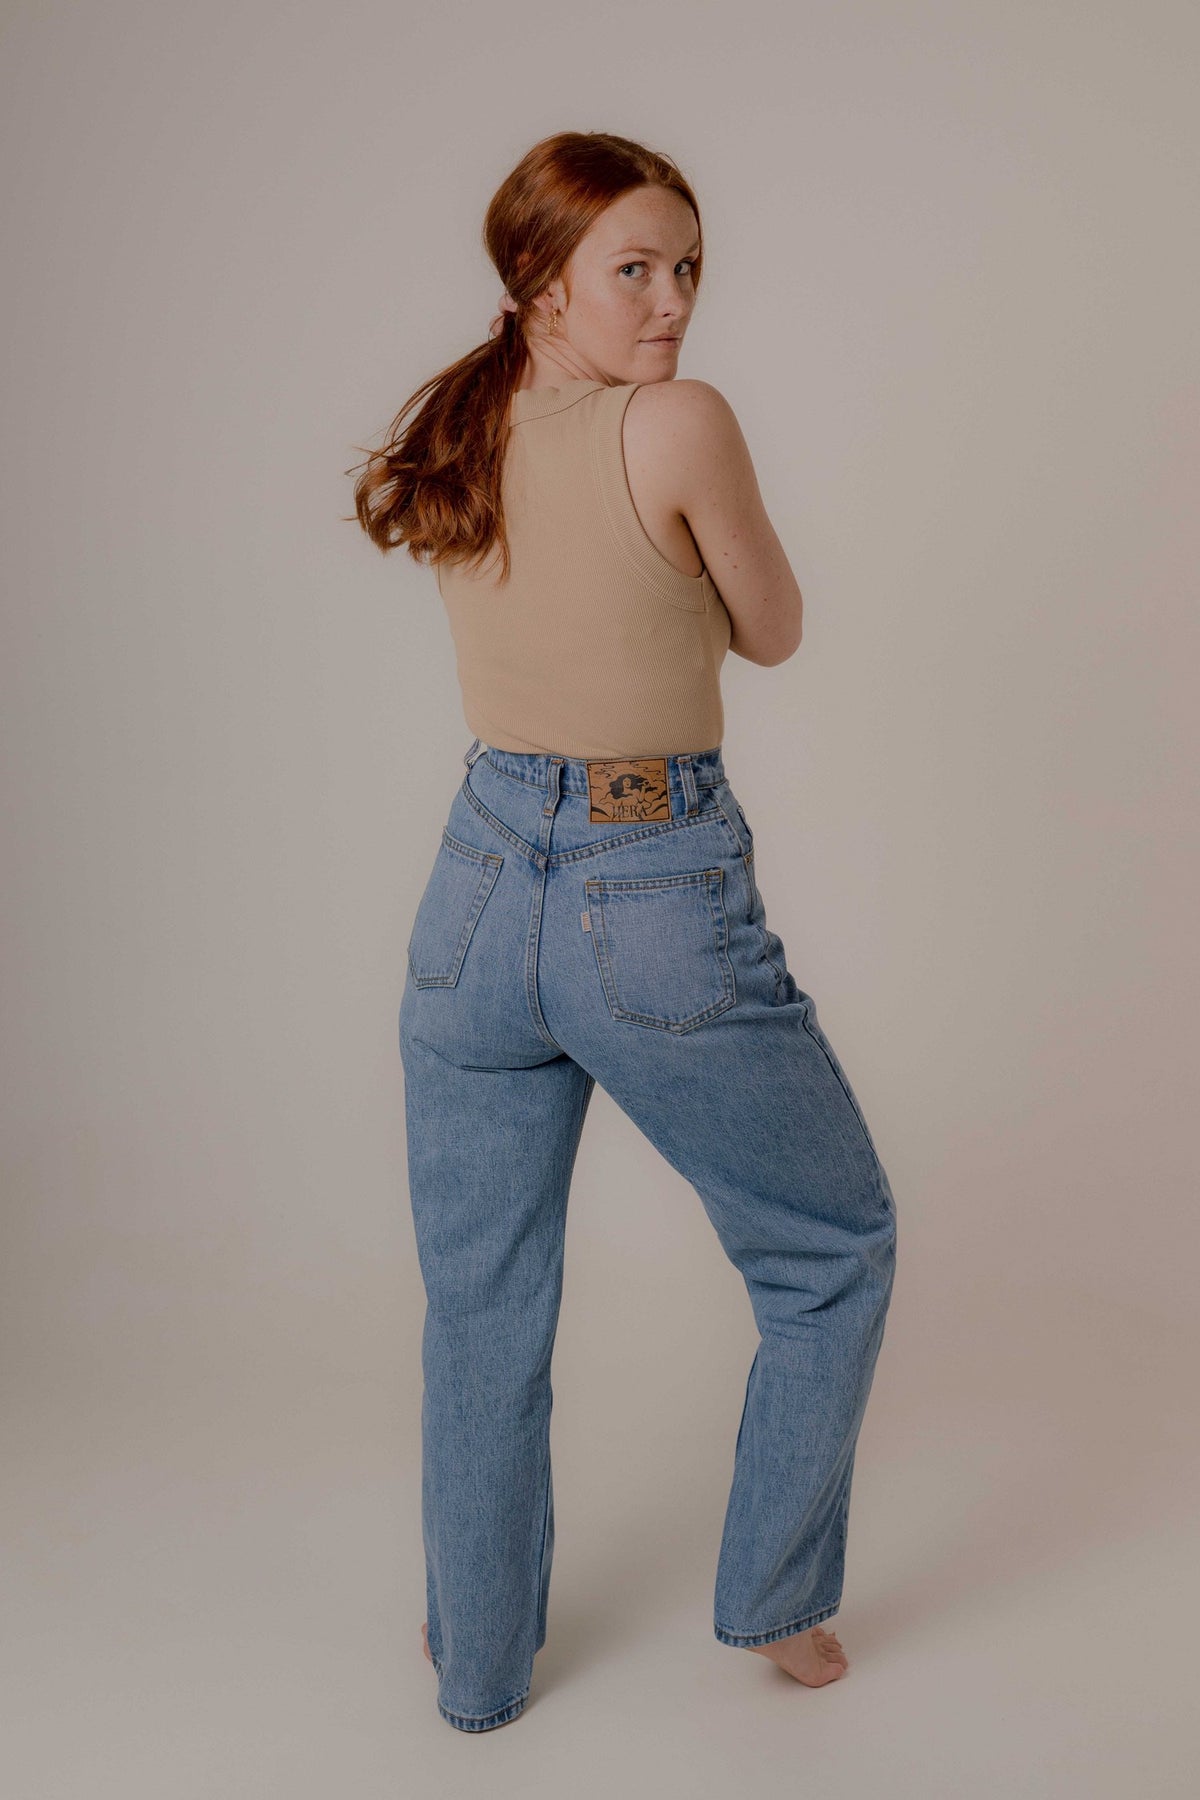 hungersnød humor At Freya - Women's High Waist Jeans – HERA Denim